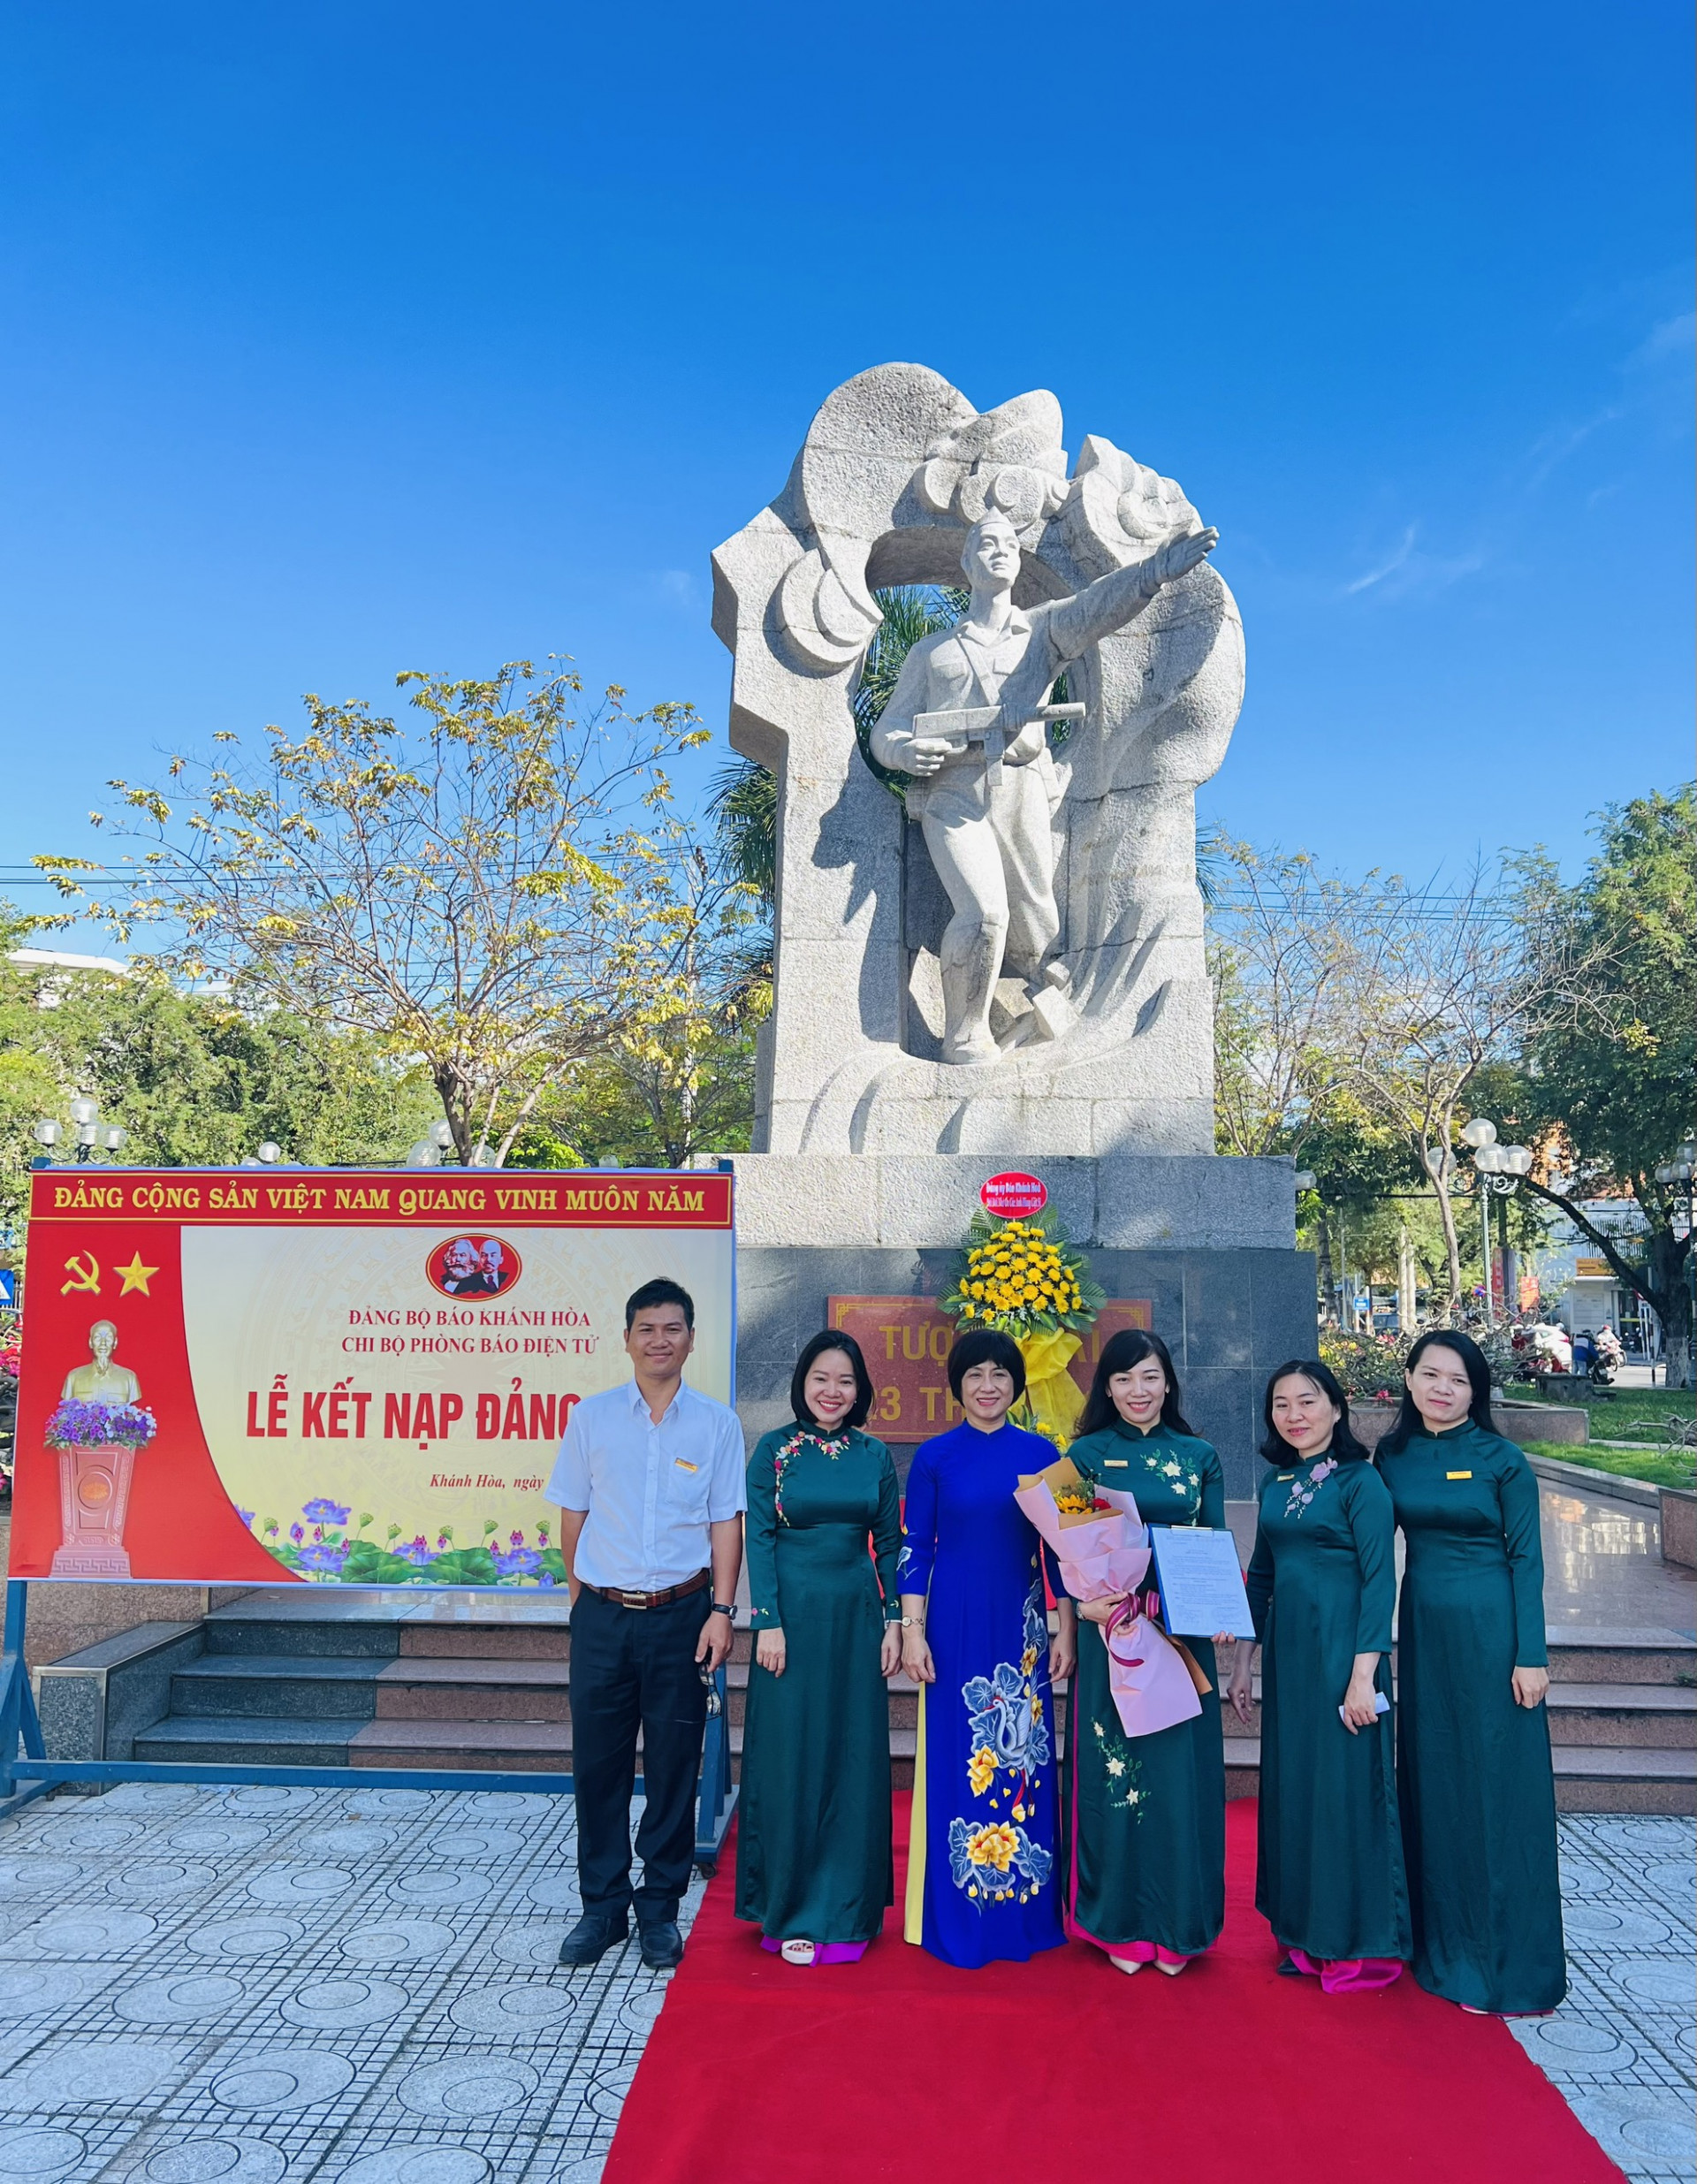 Lãnh đạo  Đảng ủy Khối  các cơ quan tỉnh và Đảng ủy  Báo Khánh Hòa  dự lễ kết nạp đảng của Chi bộ  Phòng Báo Điện tử  tại Công viên  23 tháng 10 Nha Trang.